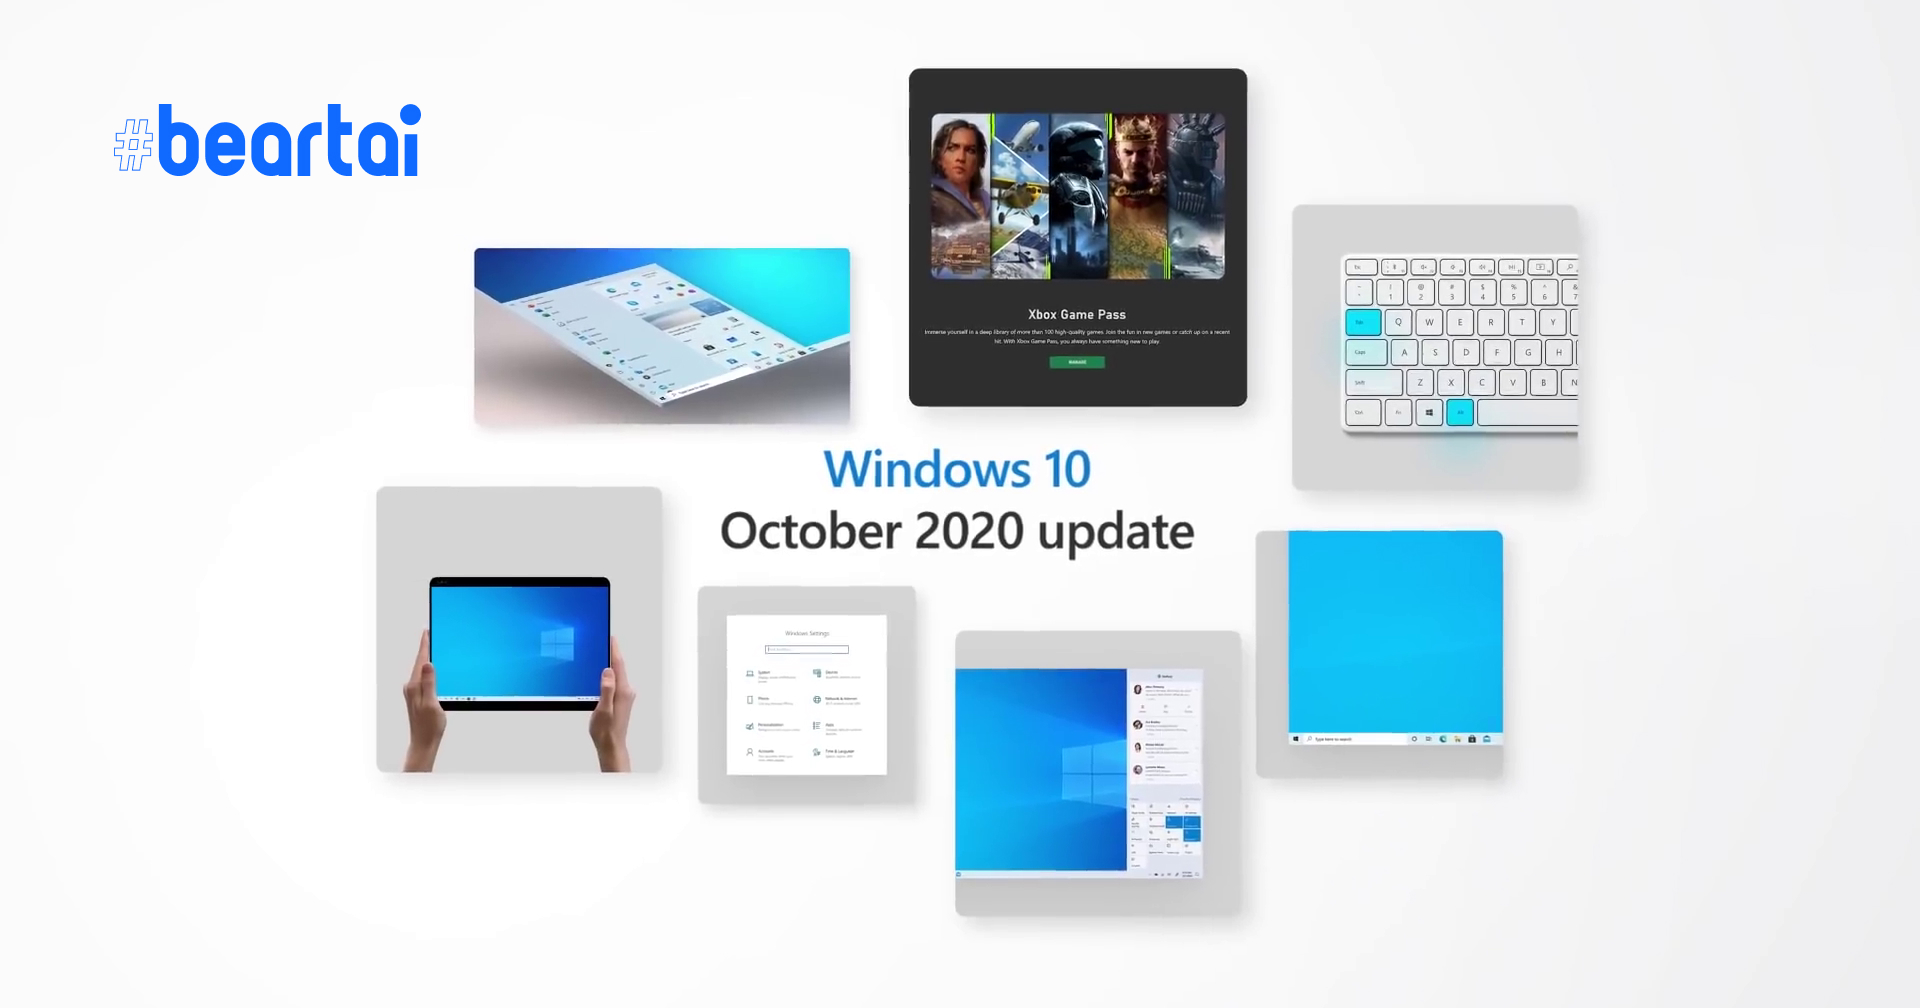 ออกอัปเดตครึ่งปีหลัง Windows 10 เดือนตุลาคม 2020 อัปความสามารถ Edge ปรับดีไซน์ Start Menu